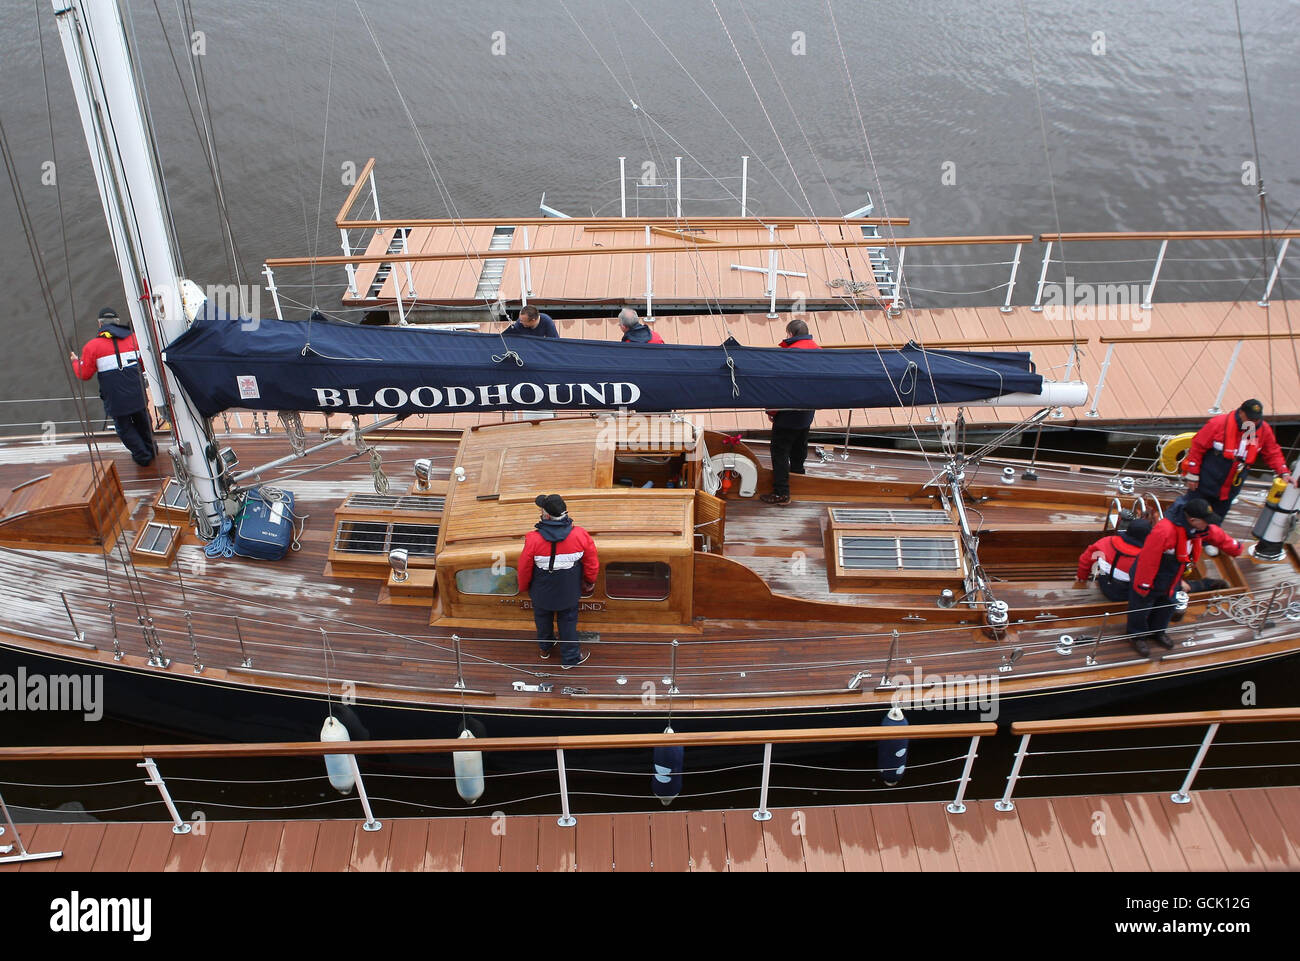 La barca da corsa Royal Bloodhound da 63 piedi arriva al suo nuovo ormeggio accanto al Royal Yacht Britannia al porto di Leith, Edimburgo. L'artigianato farà parte di una nuova mostra sulla passione della Famiglia reale per la vela dopo essere stato acquistato dai fiduciari all'inizio di quest'anno. Foto Stock